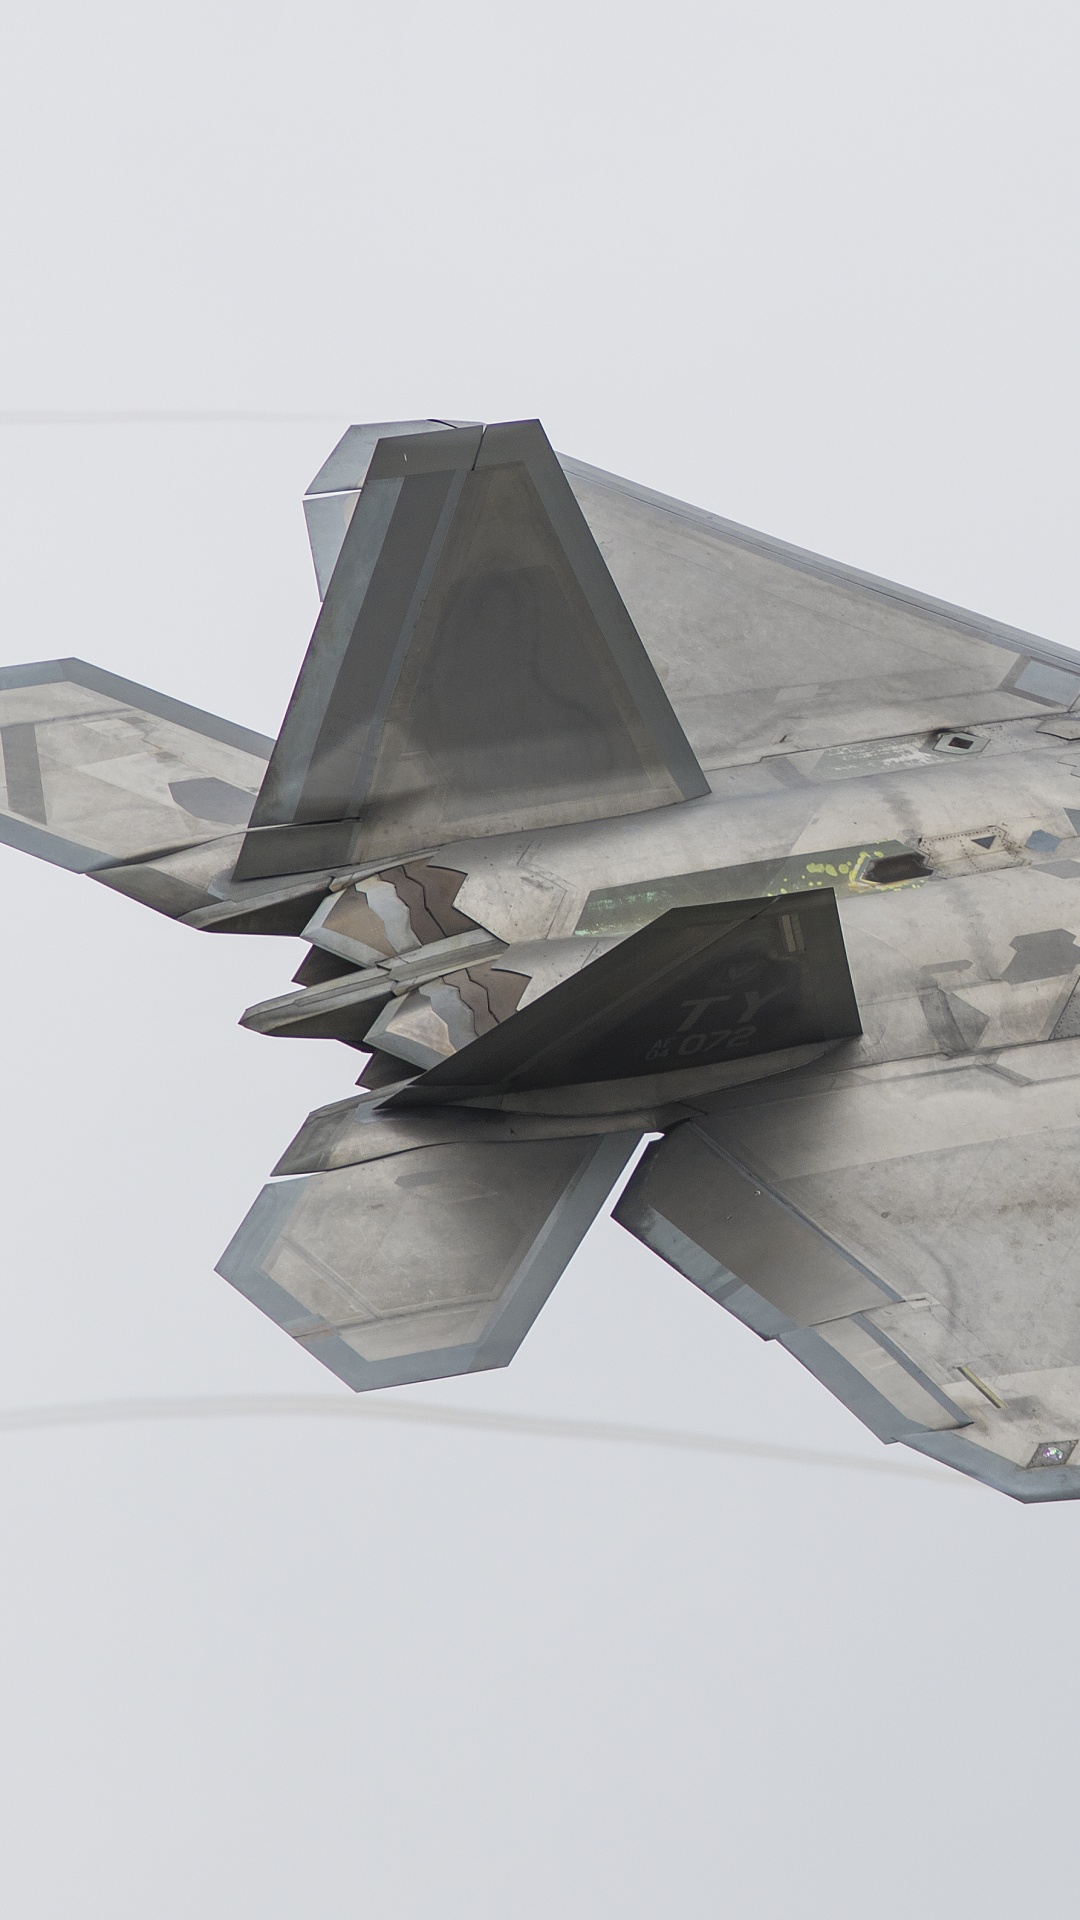 Grauer Kampfjet in Der Luft. Wallpaper in 1080x1920 Resolution